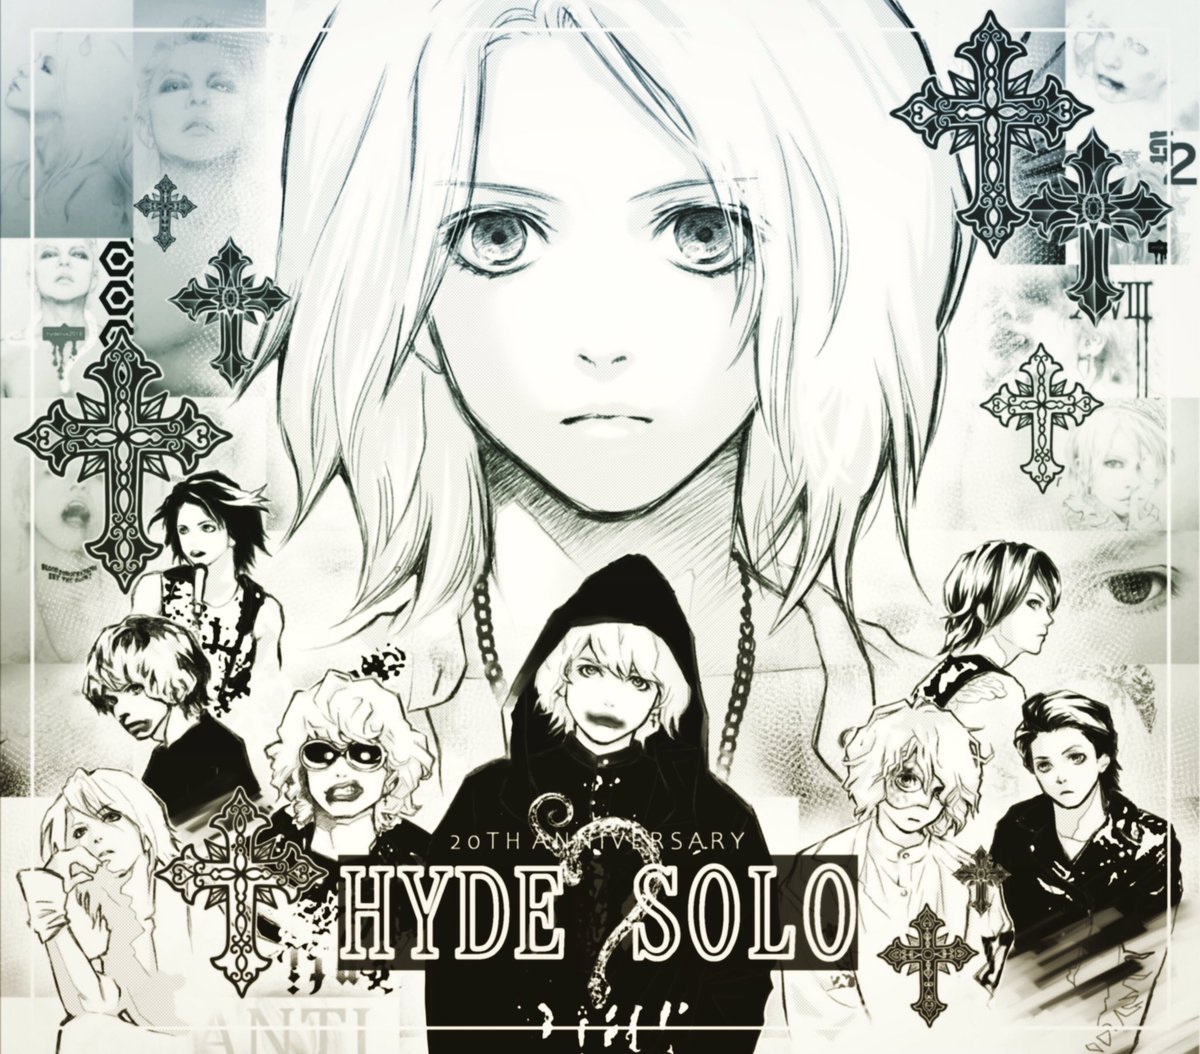 Aya On Twitter Hydeさんのソロ20周年記念グッズ ジグソーパズルのデザインを 漫画の扉絵風に描いてみました キャラ豊富 Hyde Illustration Manga 絵 イラスト パズル 漫画